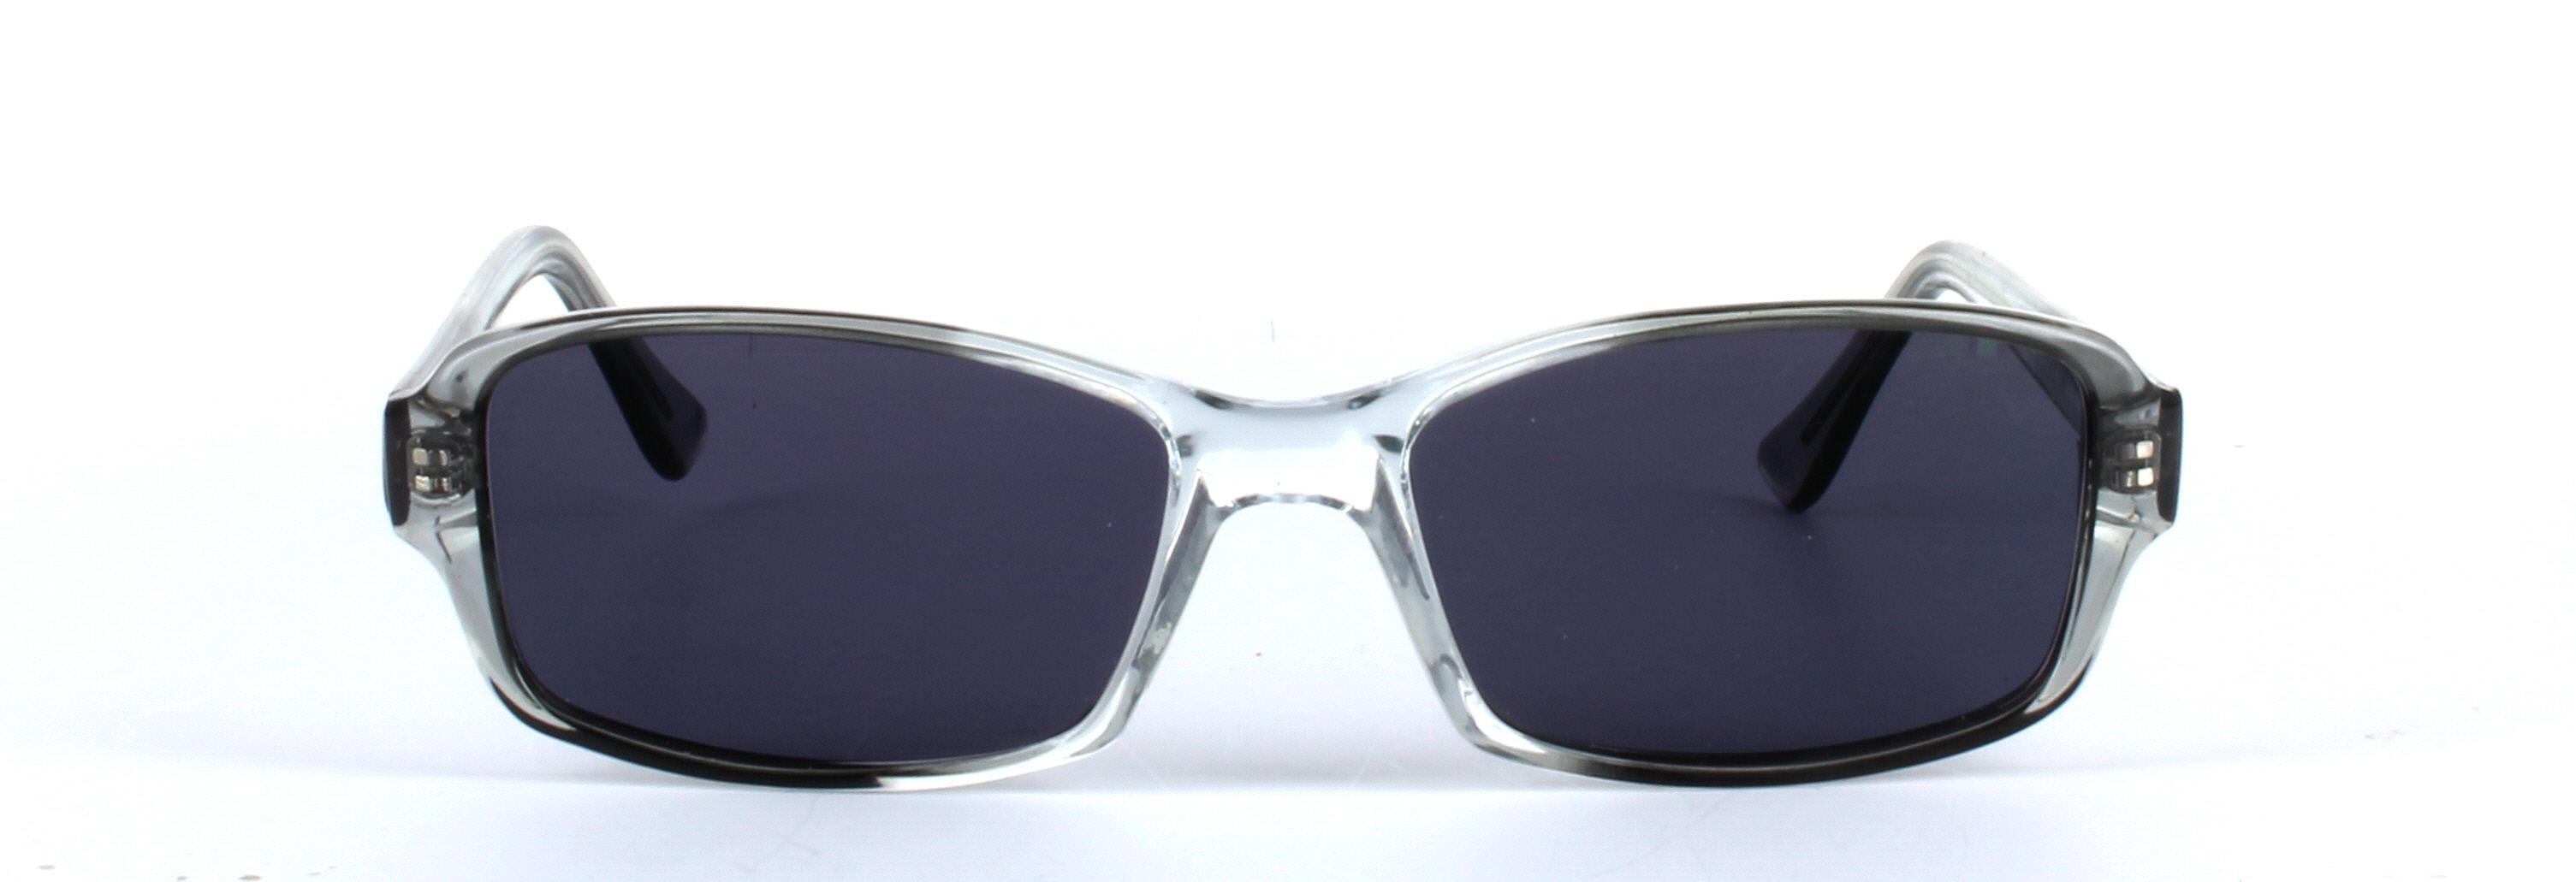 Chico Grey Full Rim Rectangular Plastic Sunglasses - Image View 5